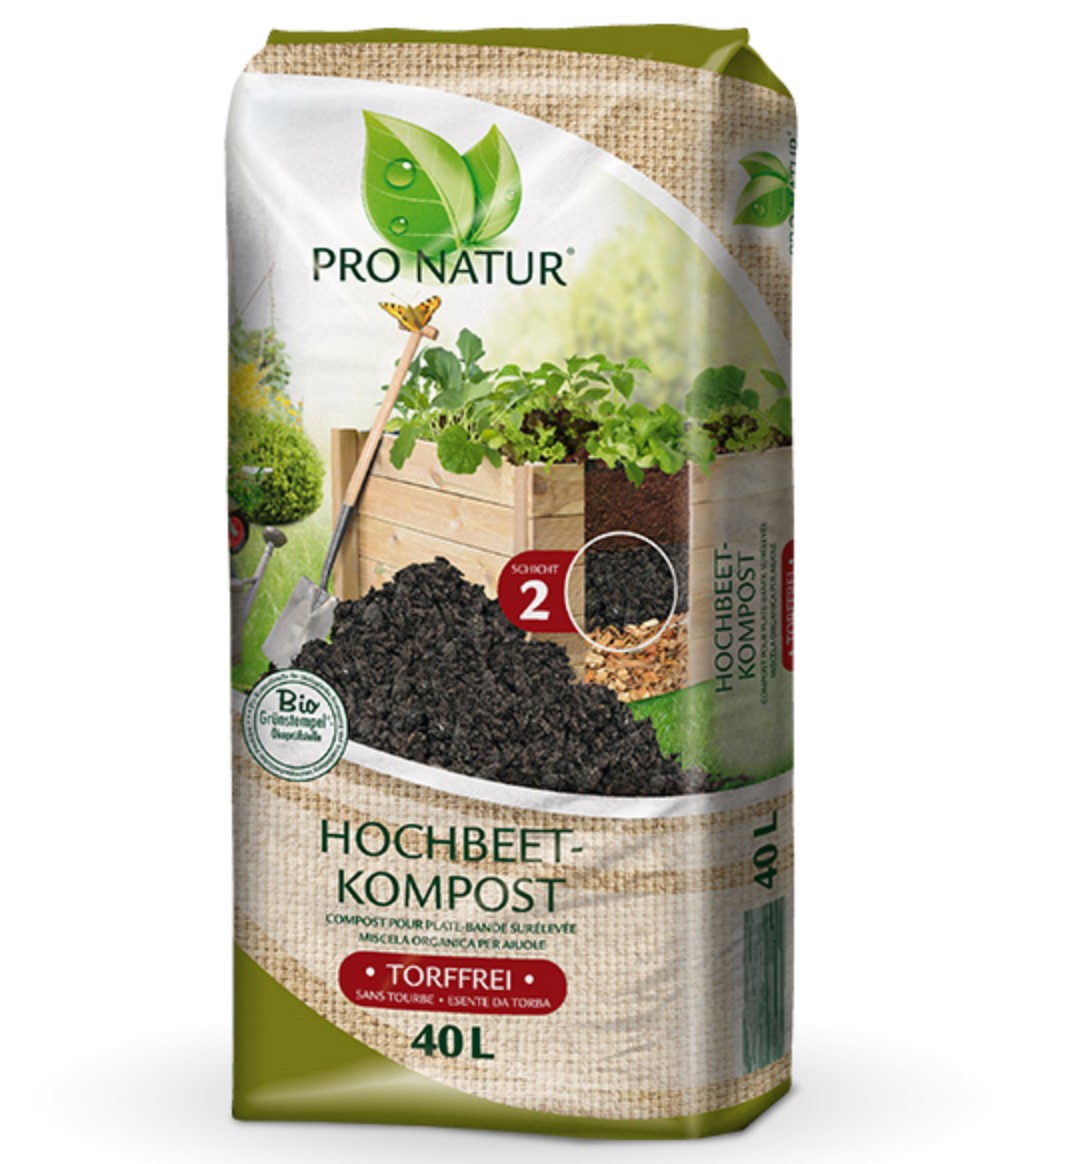 PRO NATUR Hochbeet Kompost BIO Grünstempel Torffrei, 40 Ltr